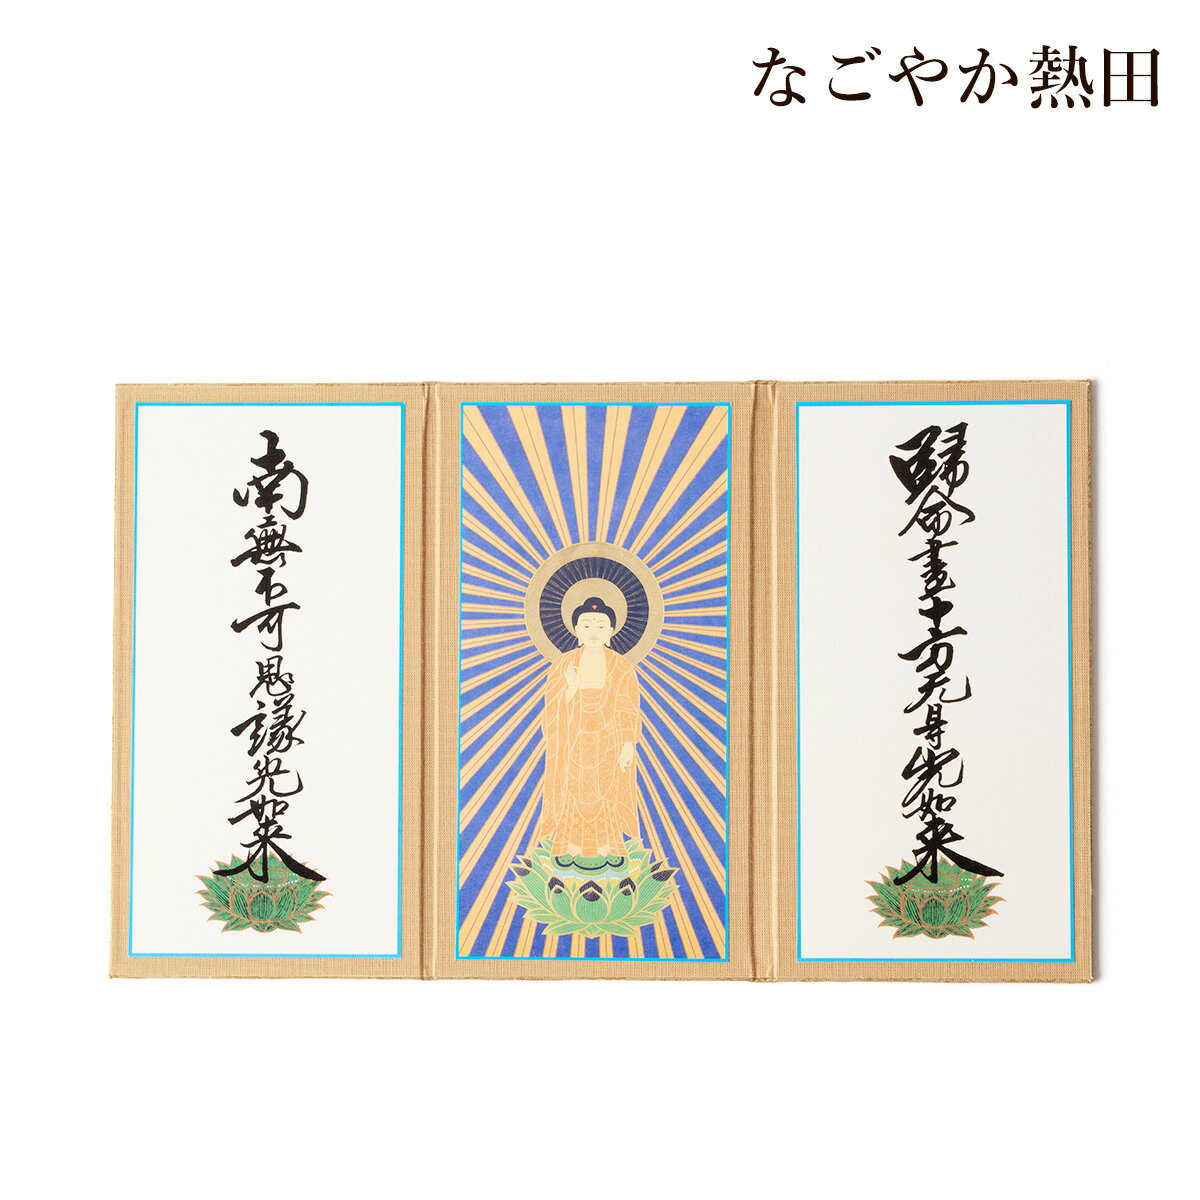 三つ折り 掛軸 真宗大谷派 選べる2サイズ 紙製 シンプル 三幅 本格的 仏壇軸 本尊 掛け軸 国産 仏壇 仏具